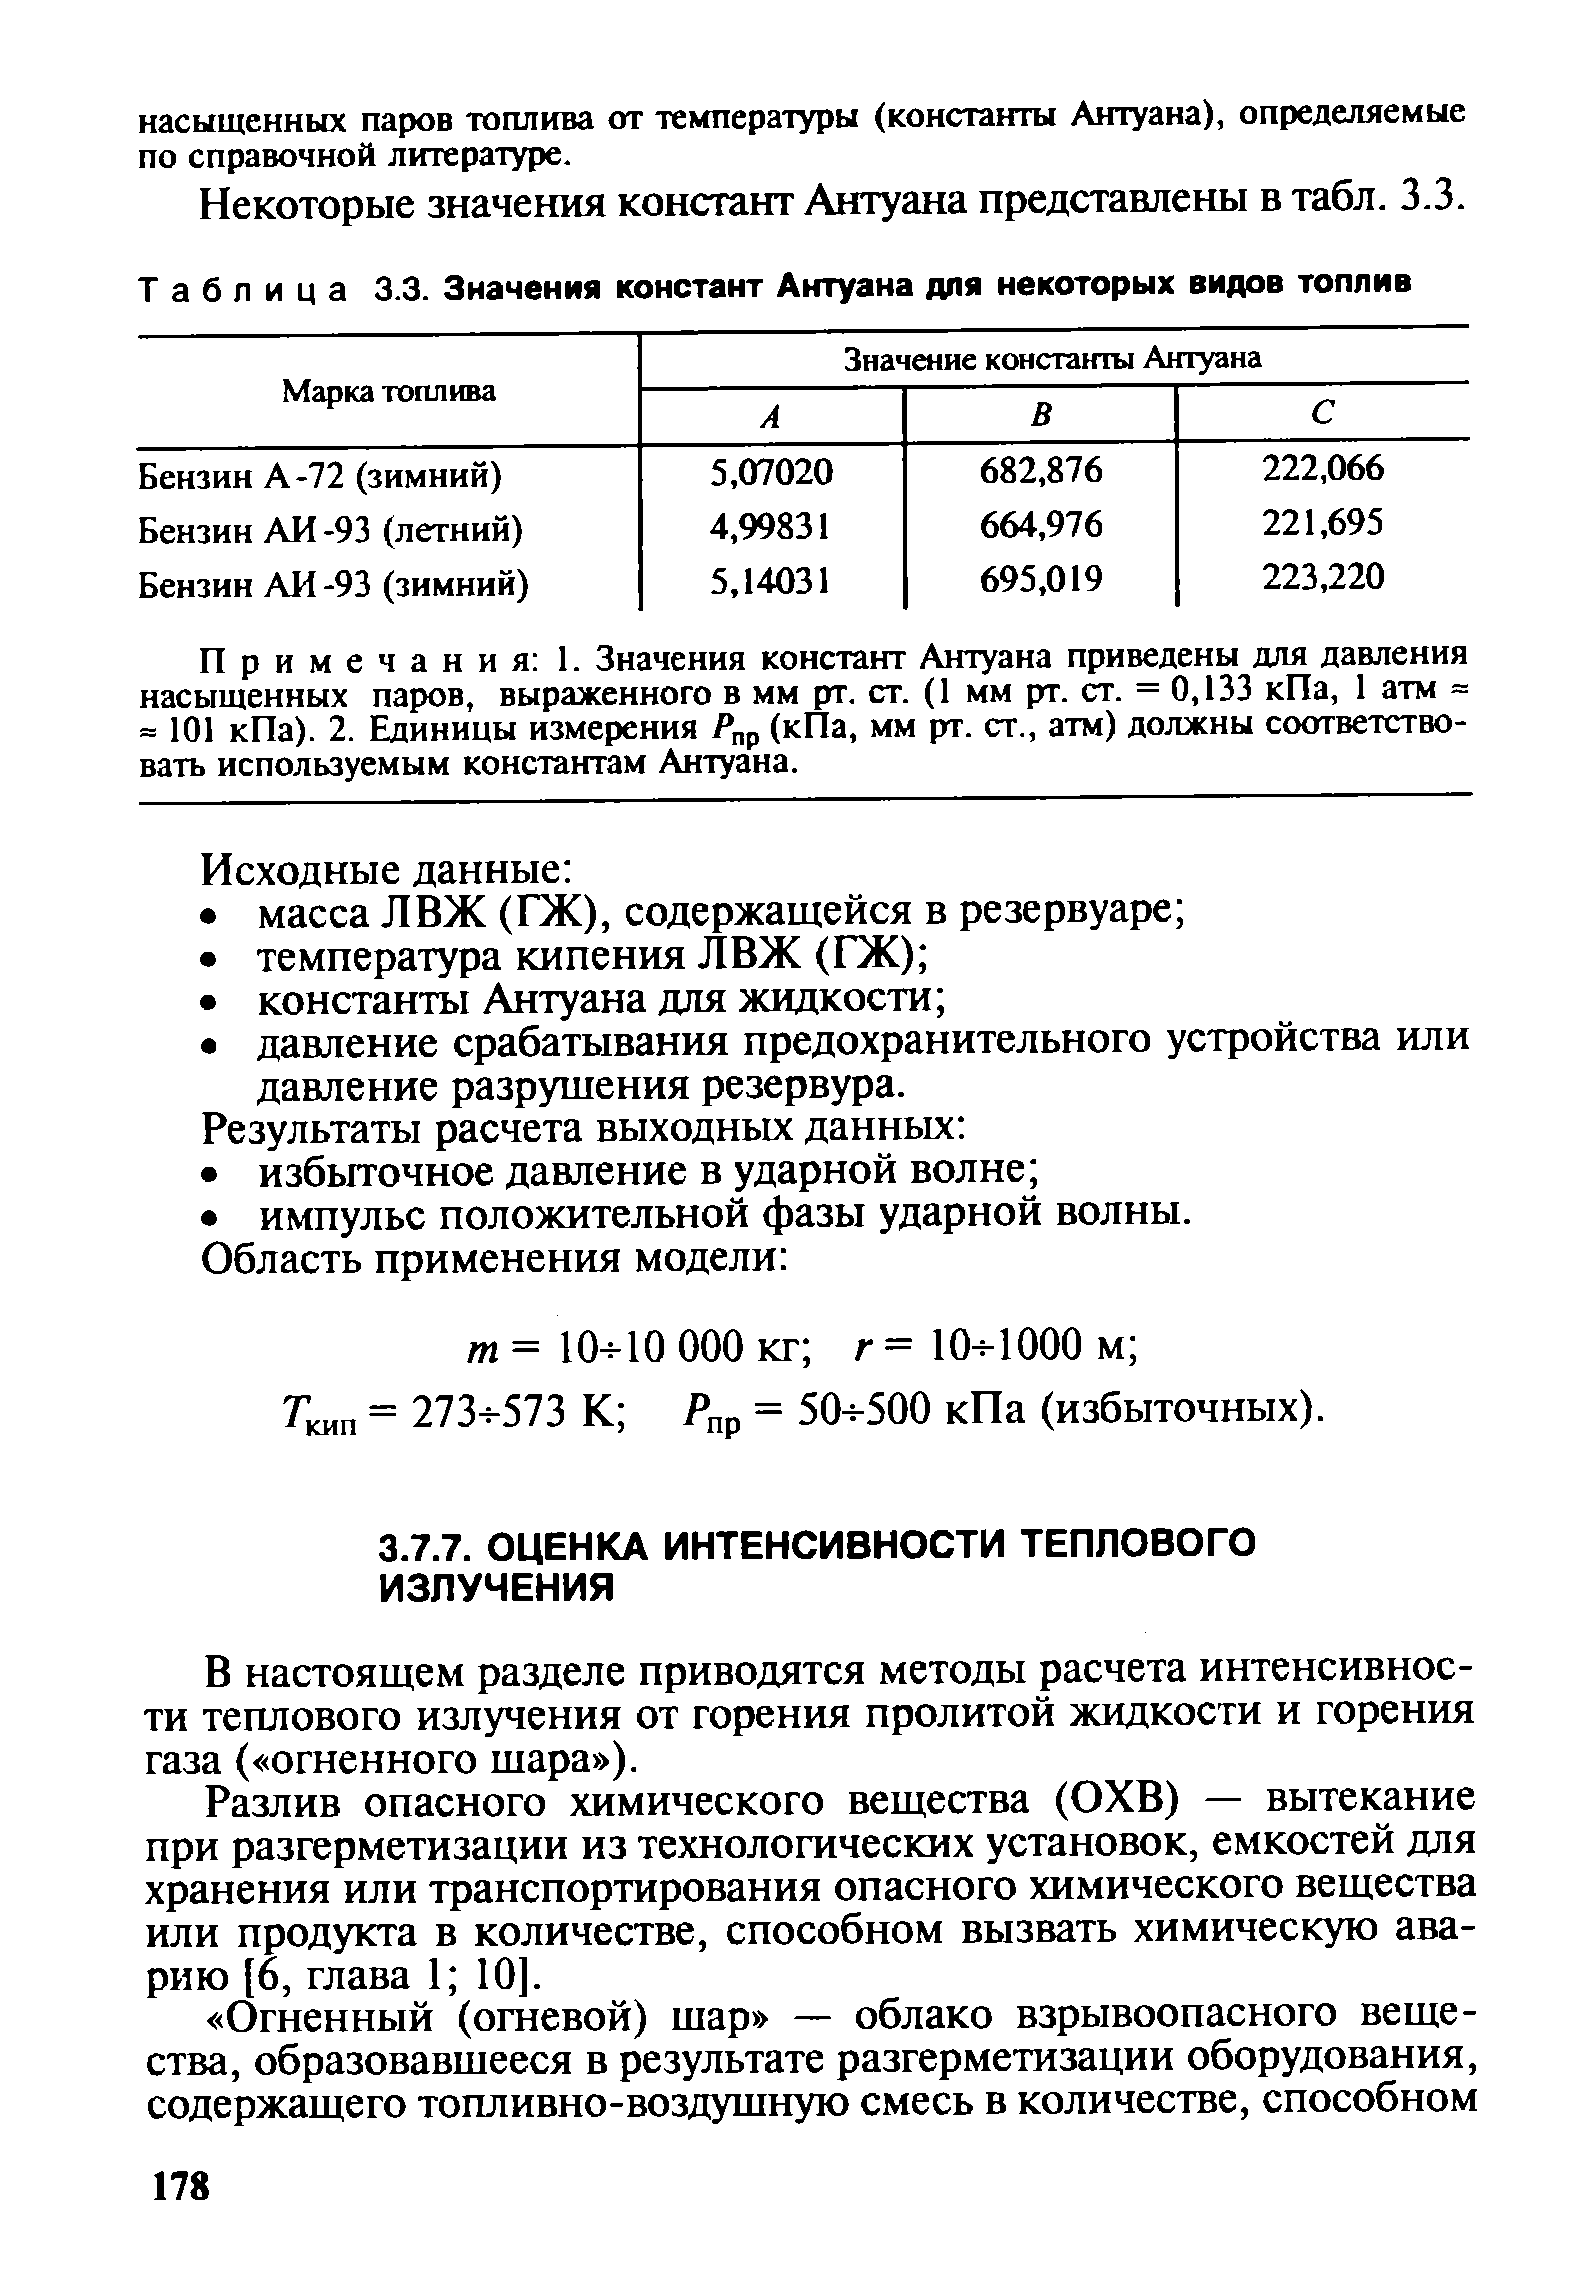 Некоторые значения констант Антуана представлены в табл. 3.3.